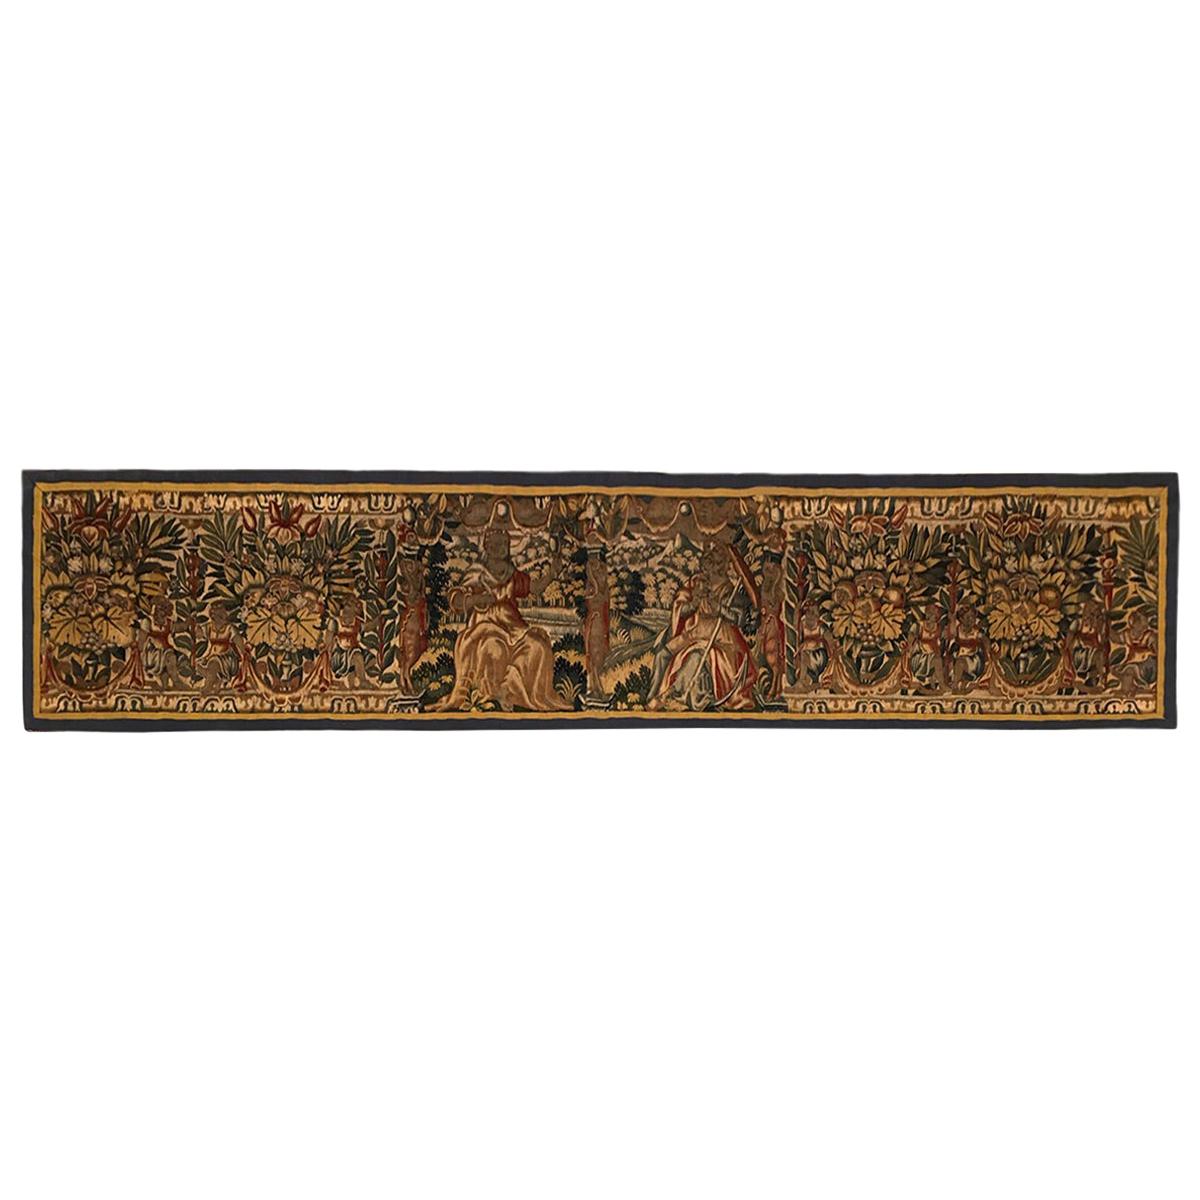 Panneau de tapisserie historique de Bruxelles du 17ème siècle en vente